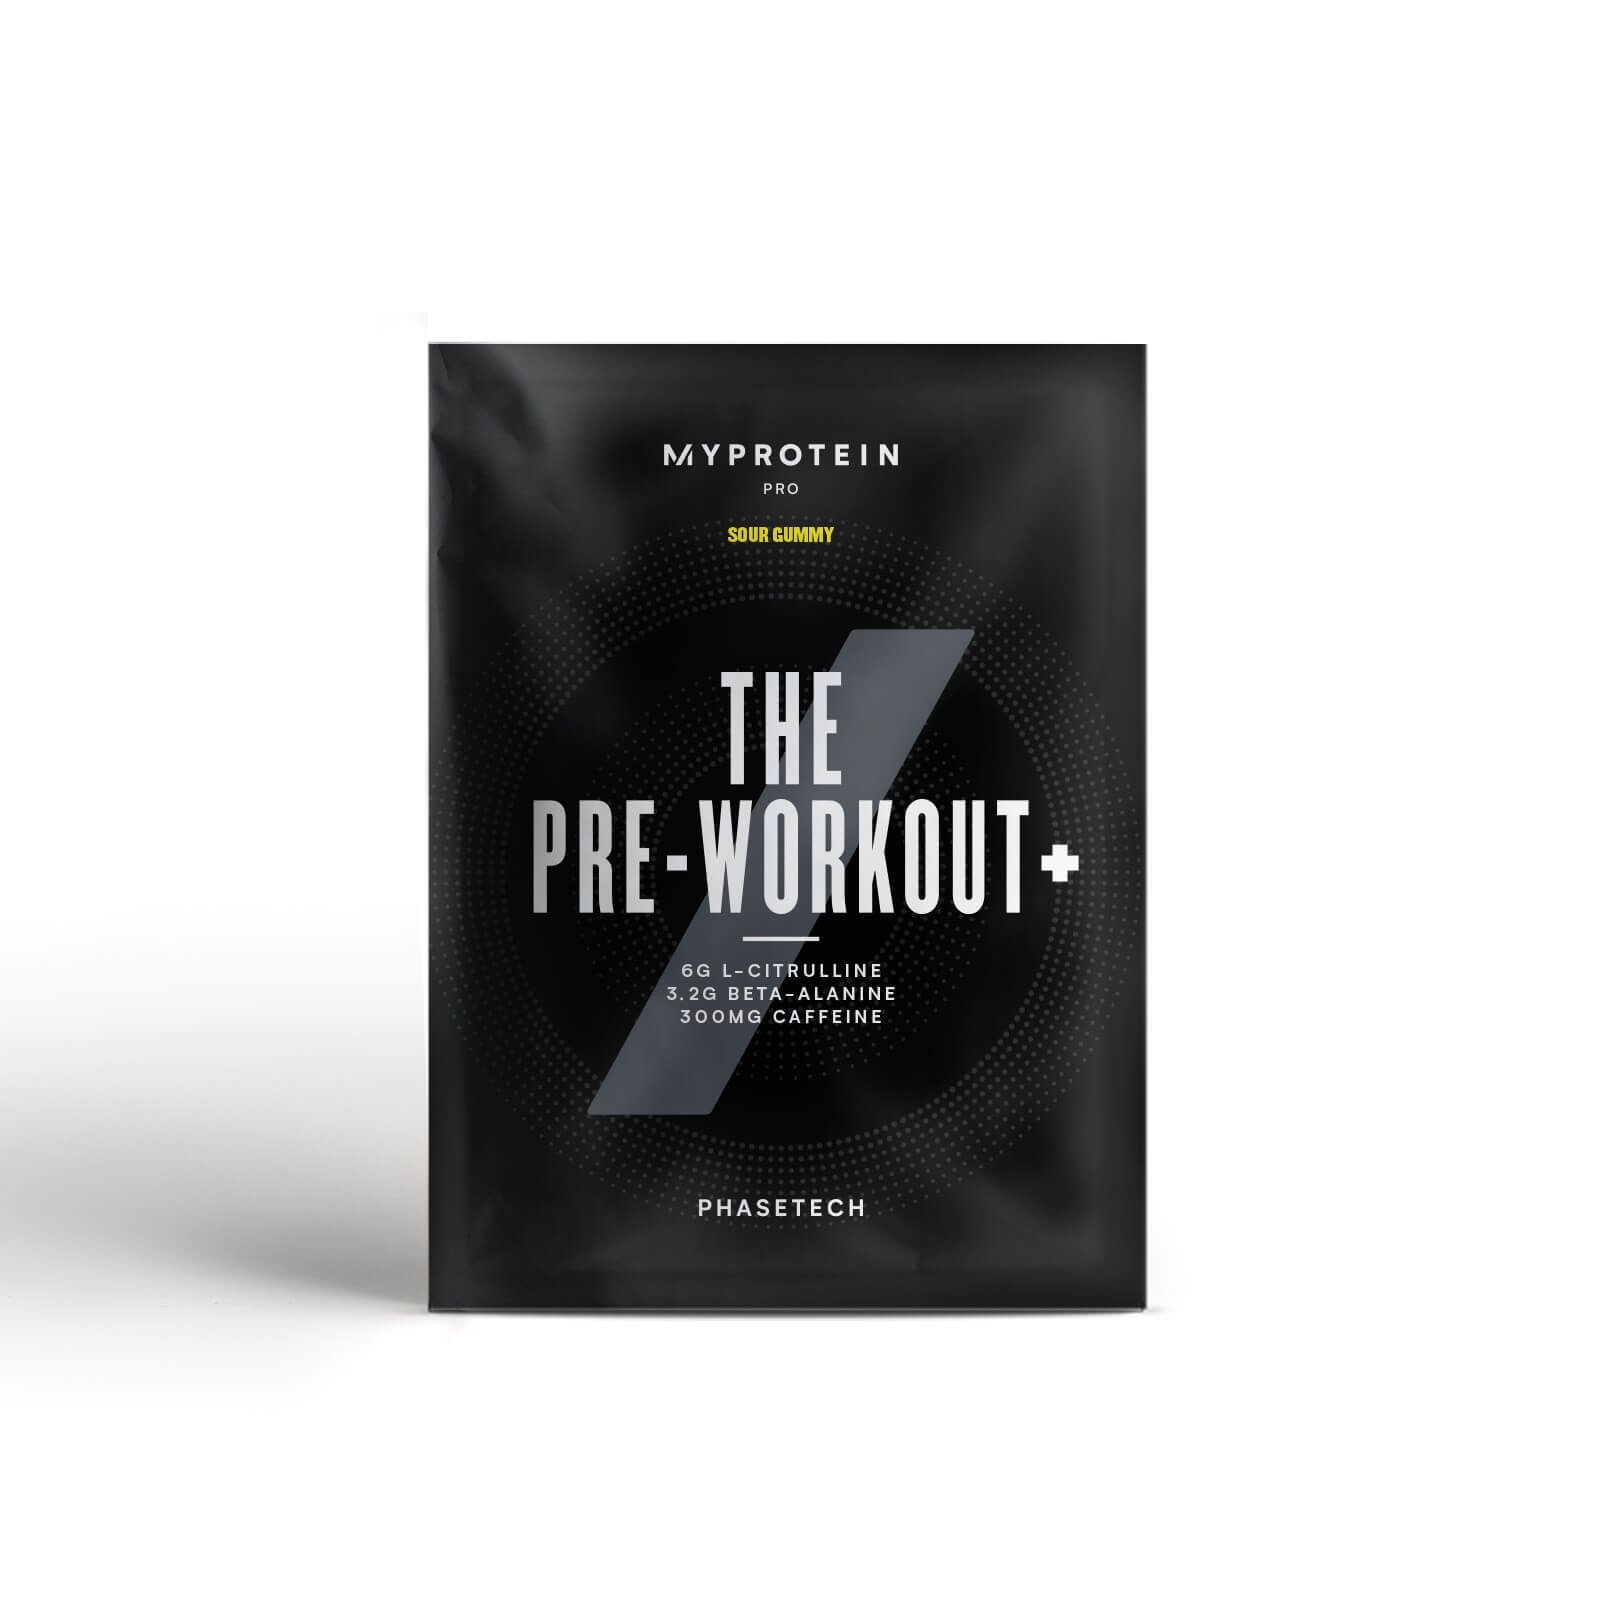 THE Pre-Workout+ (Sản Phẩm Mẫu) - Sour Gummy